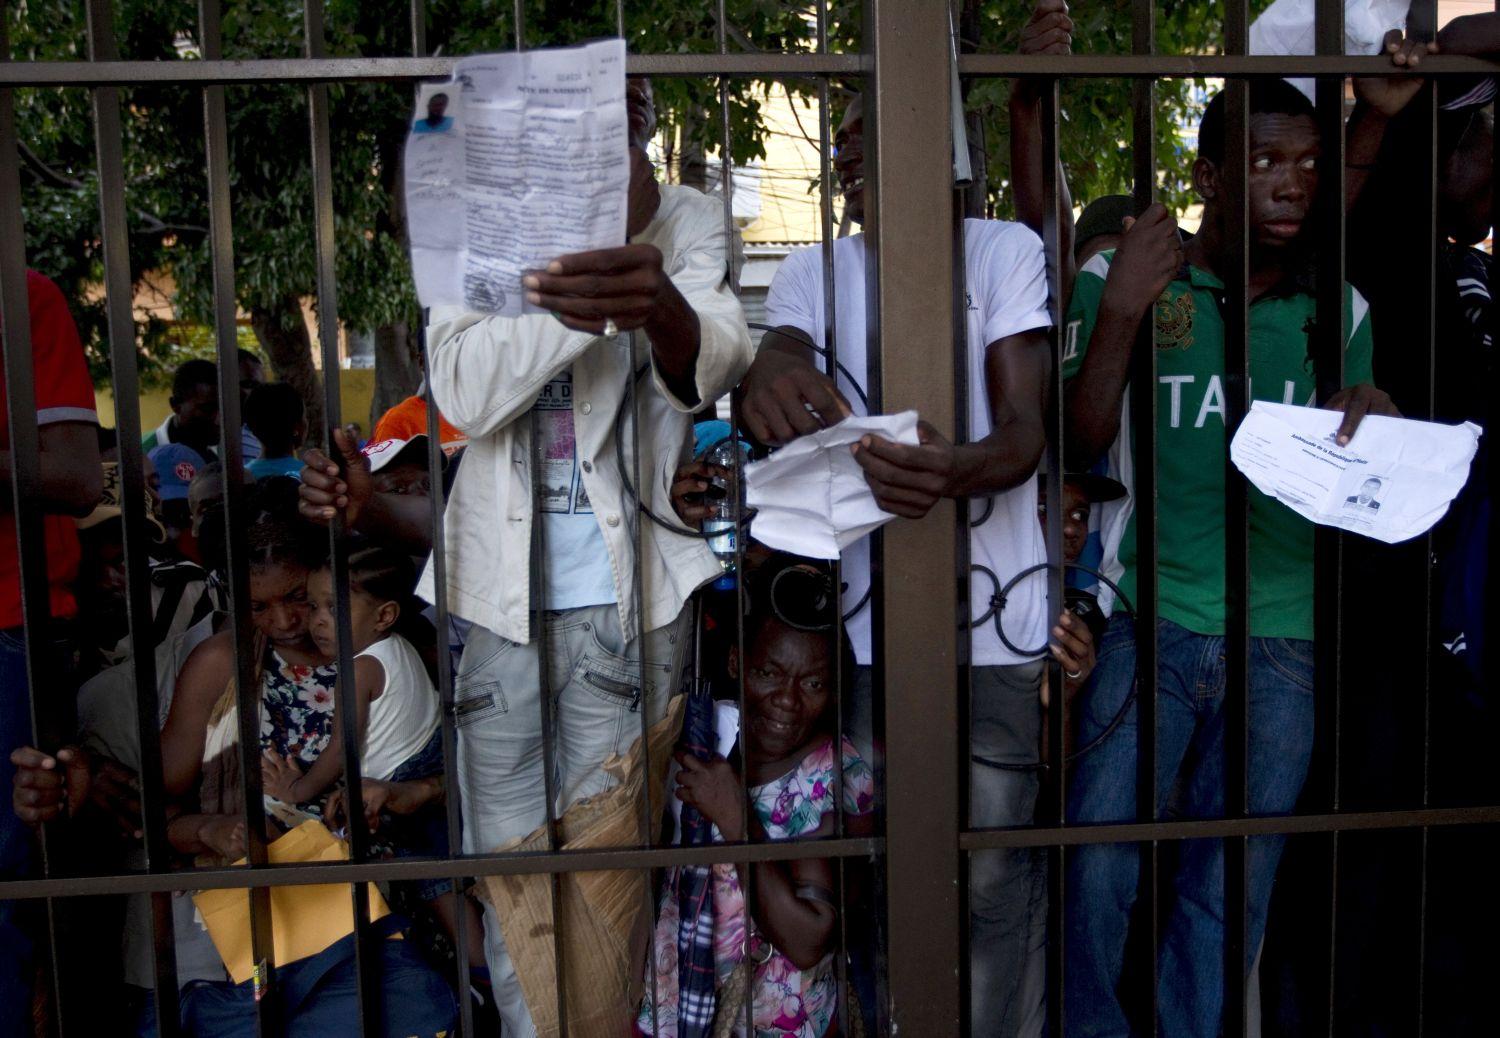 Irataikat lobogtató haitiak a dominikai rendőrségen: papírjuk van róla